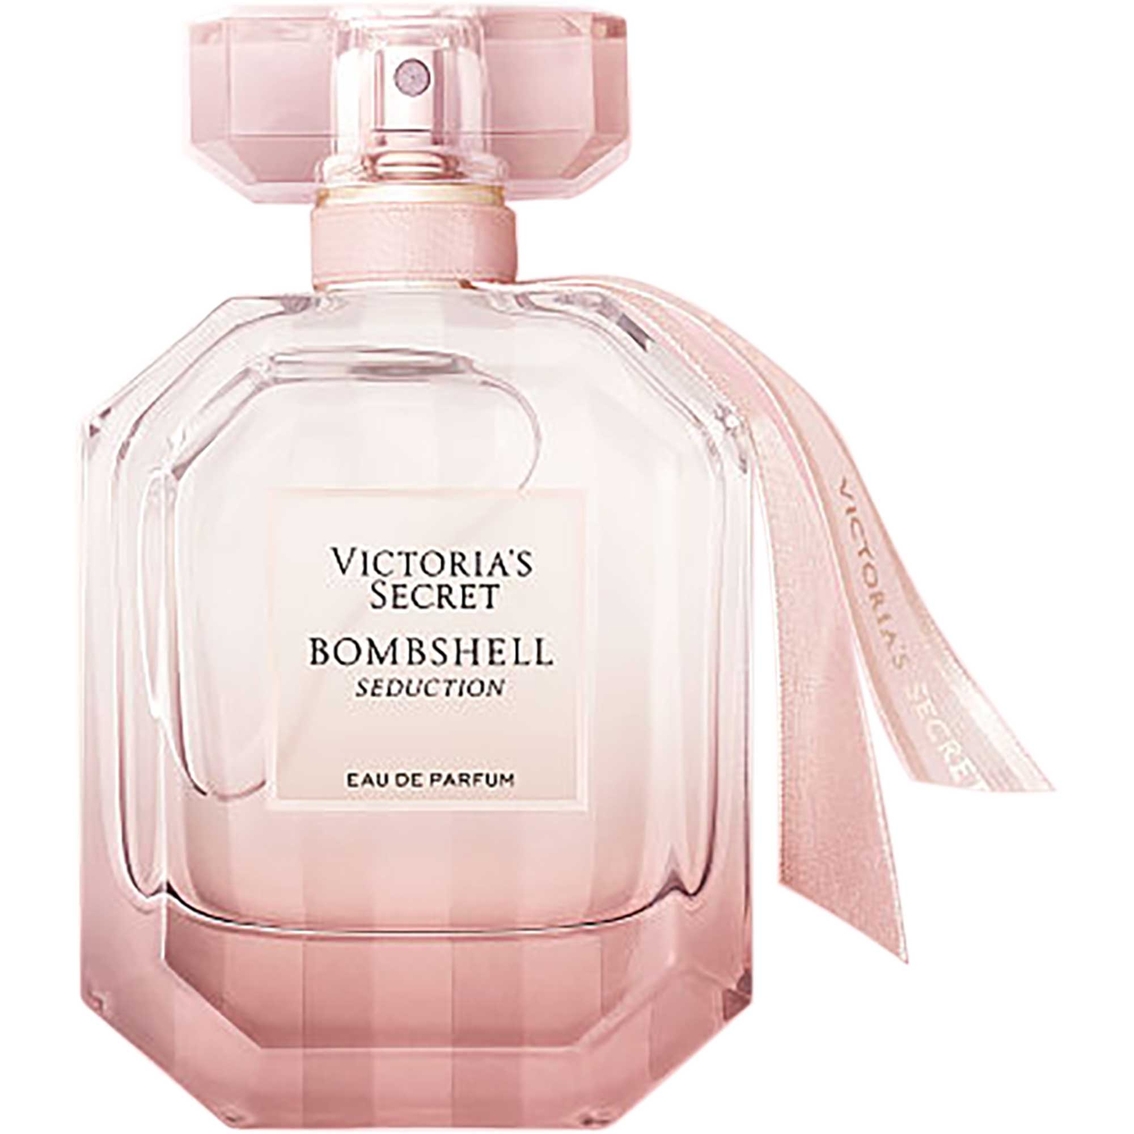 Victoria's Secret Bombshell Seduction Eau De Parfum Spray | Fragrances ...